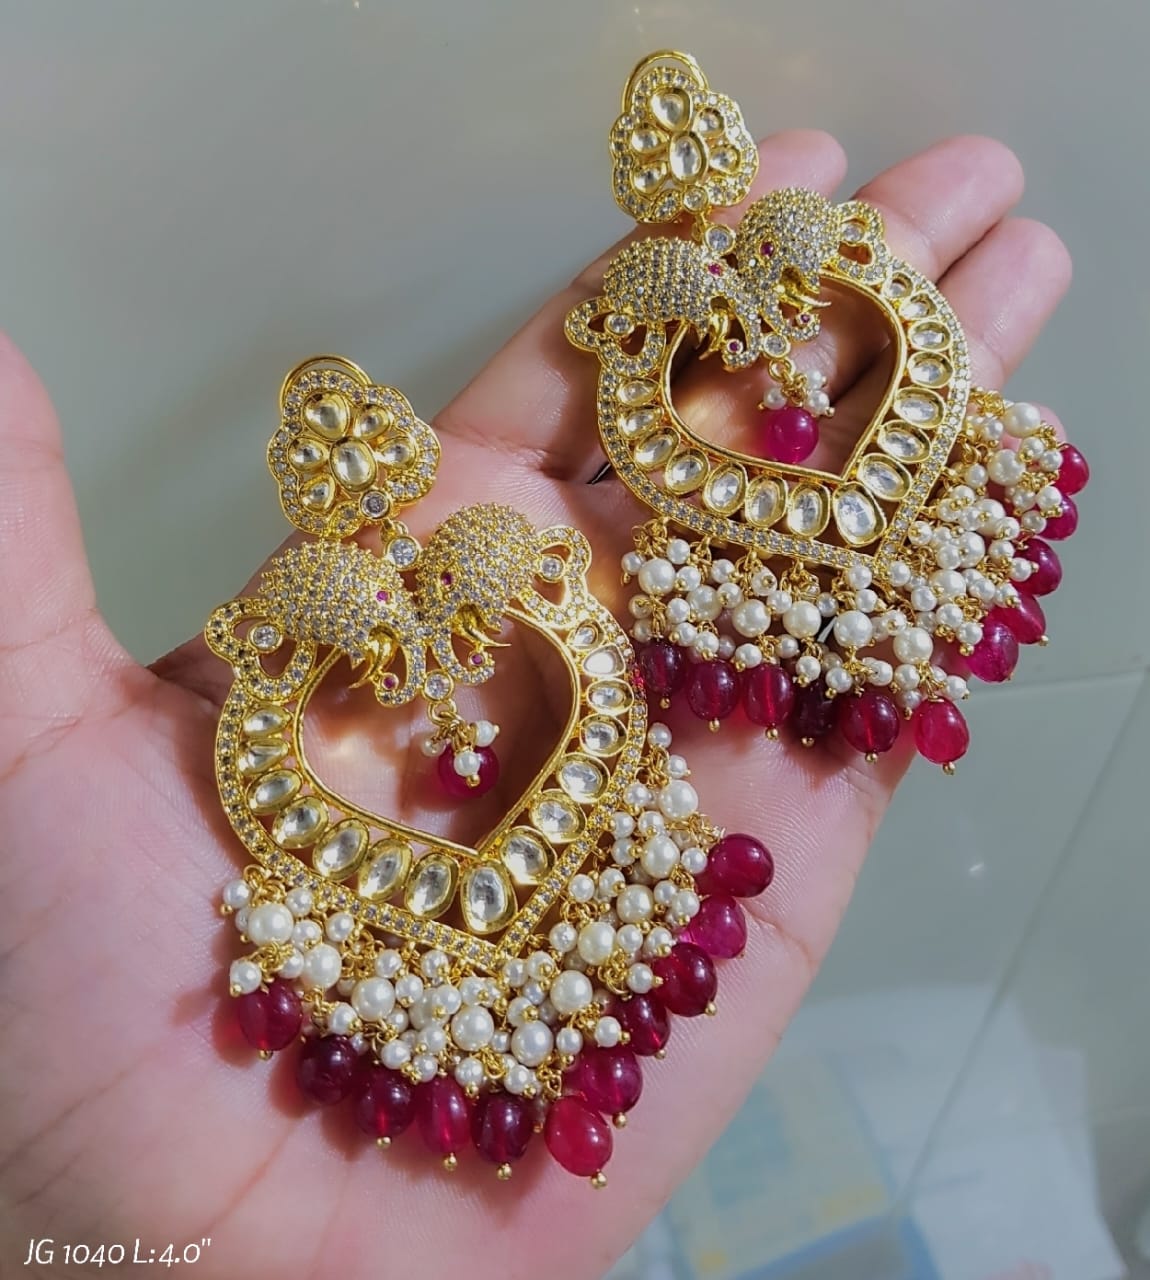 Elephant inspired earrings